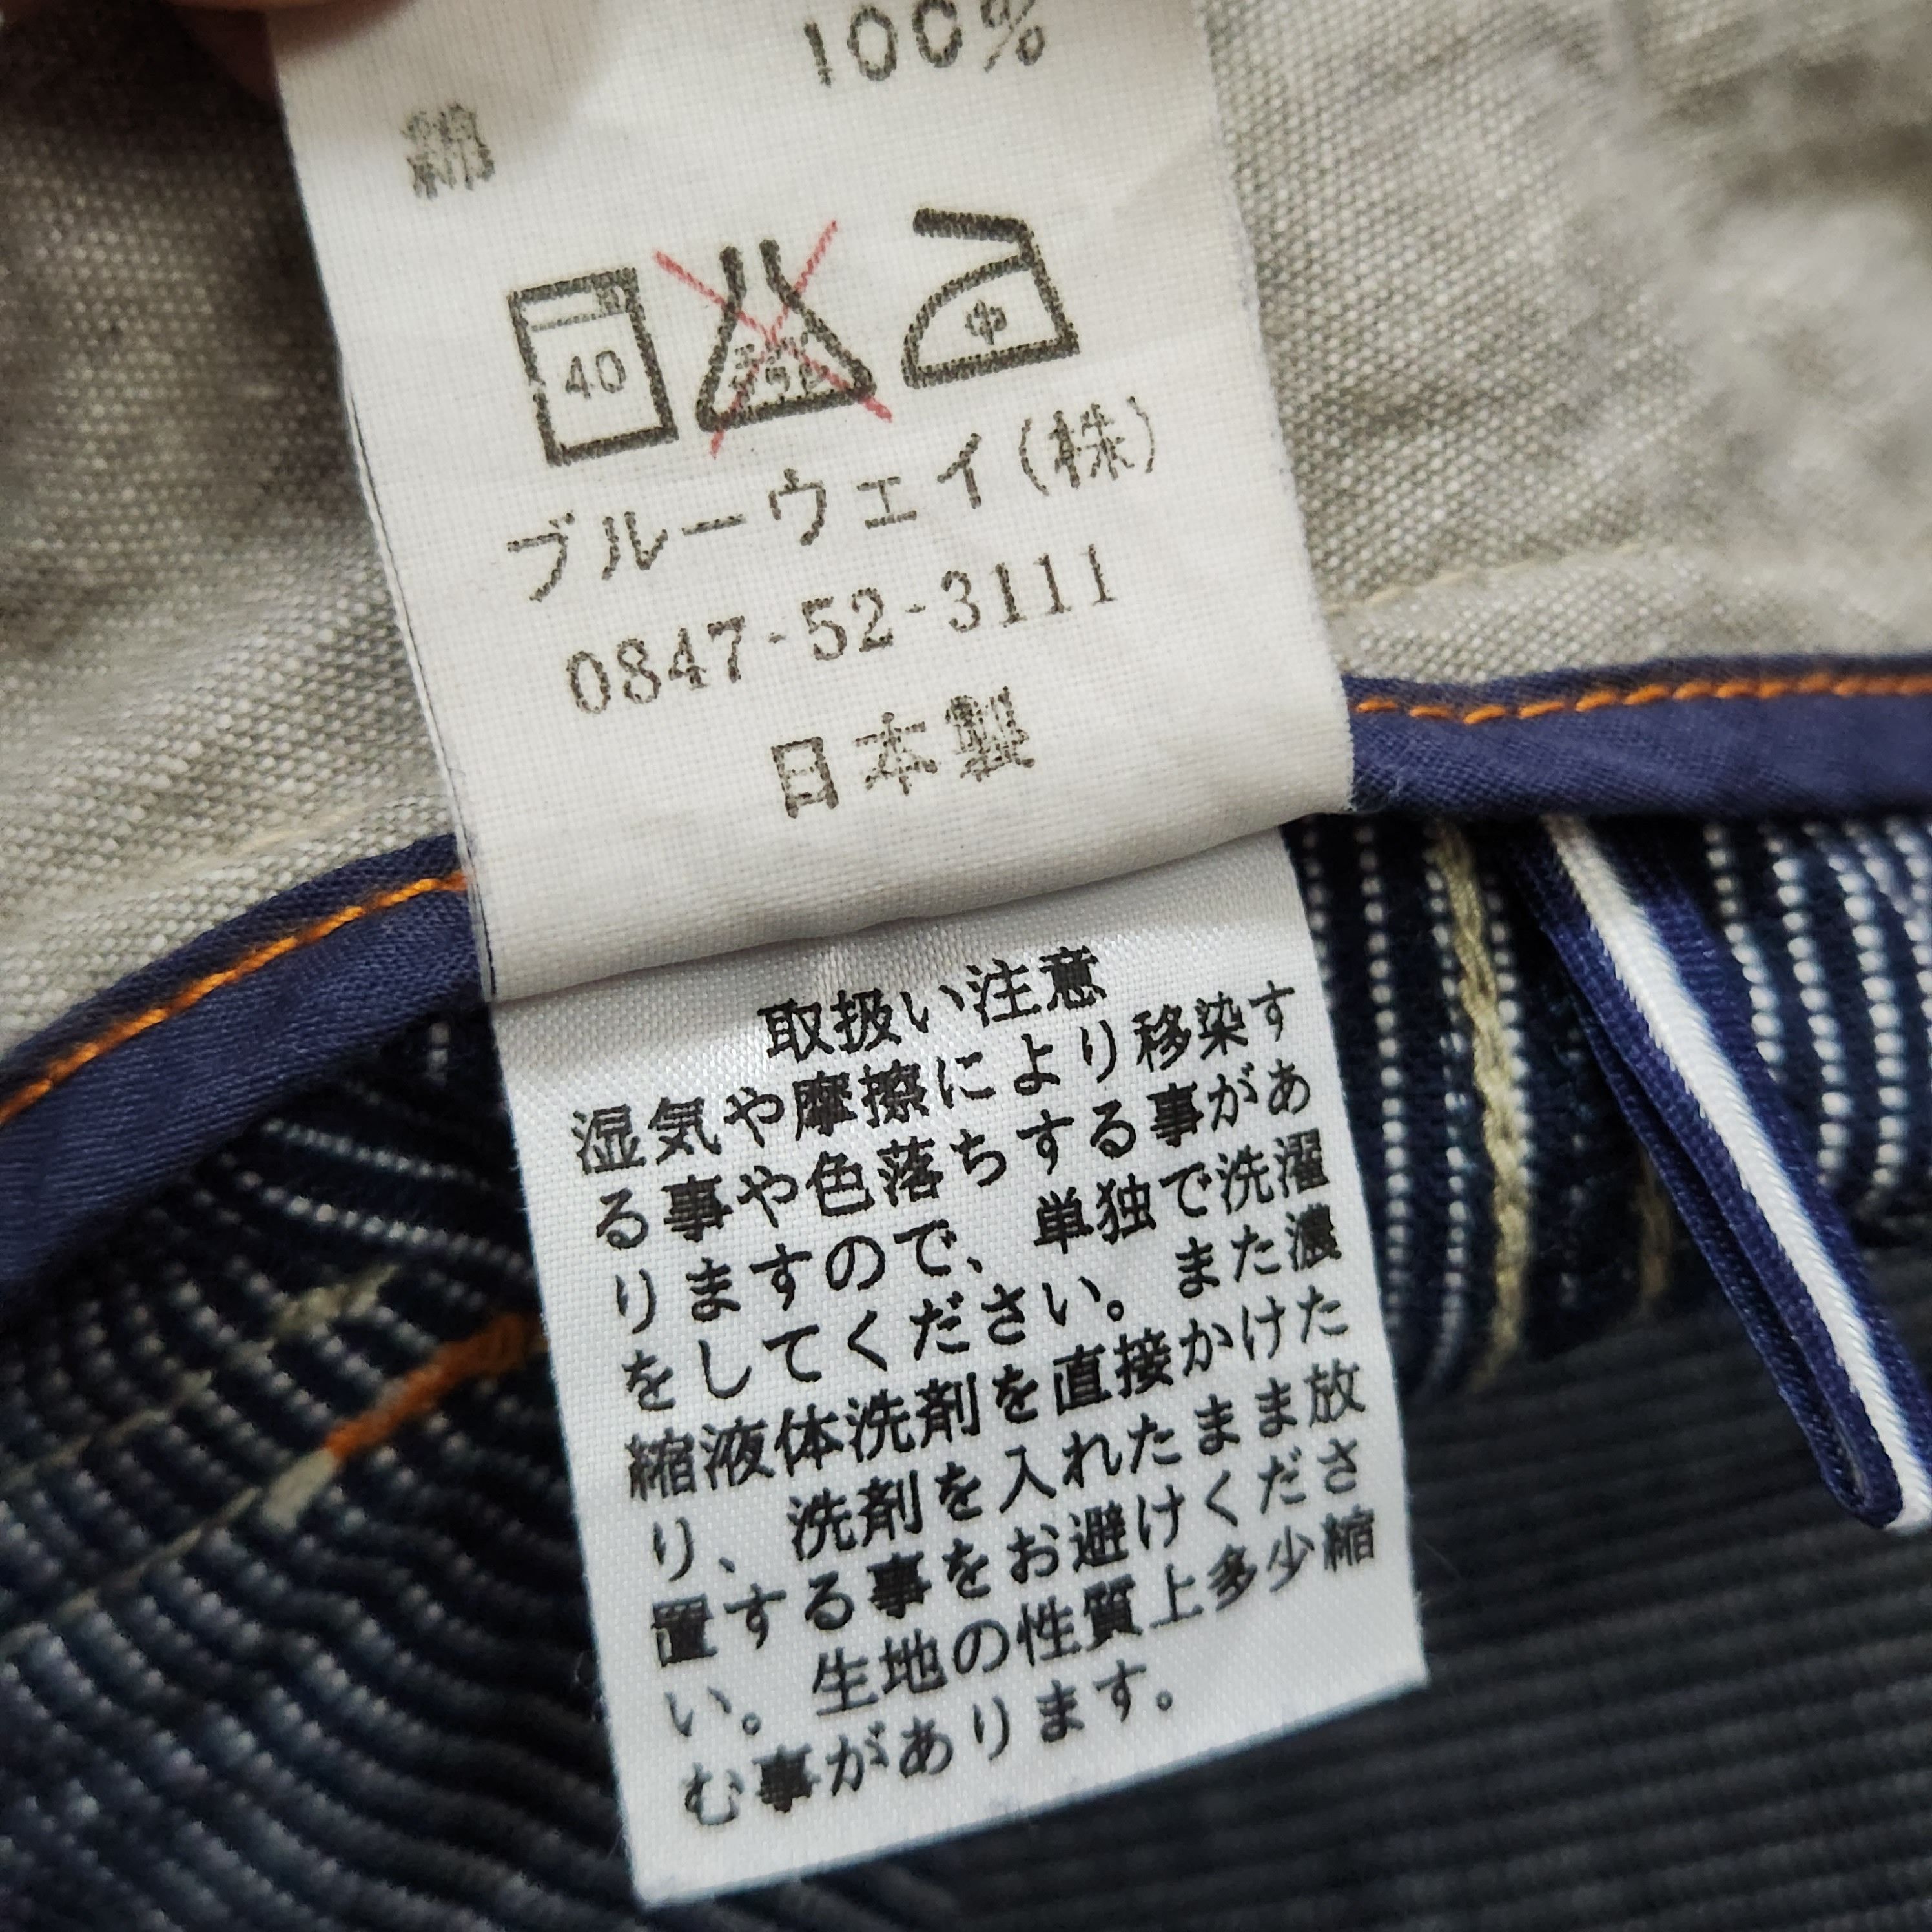 Japanese Brand - Flare ET Boite Flare Denim Jeans Japan - 2